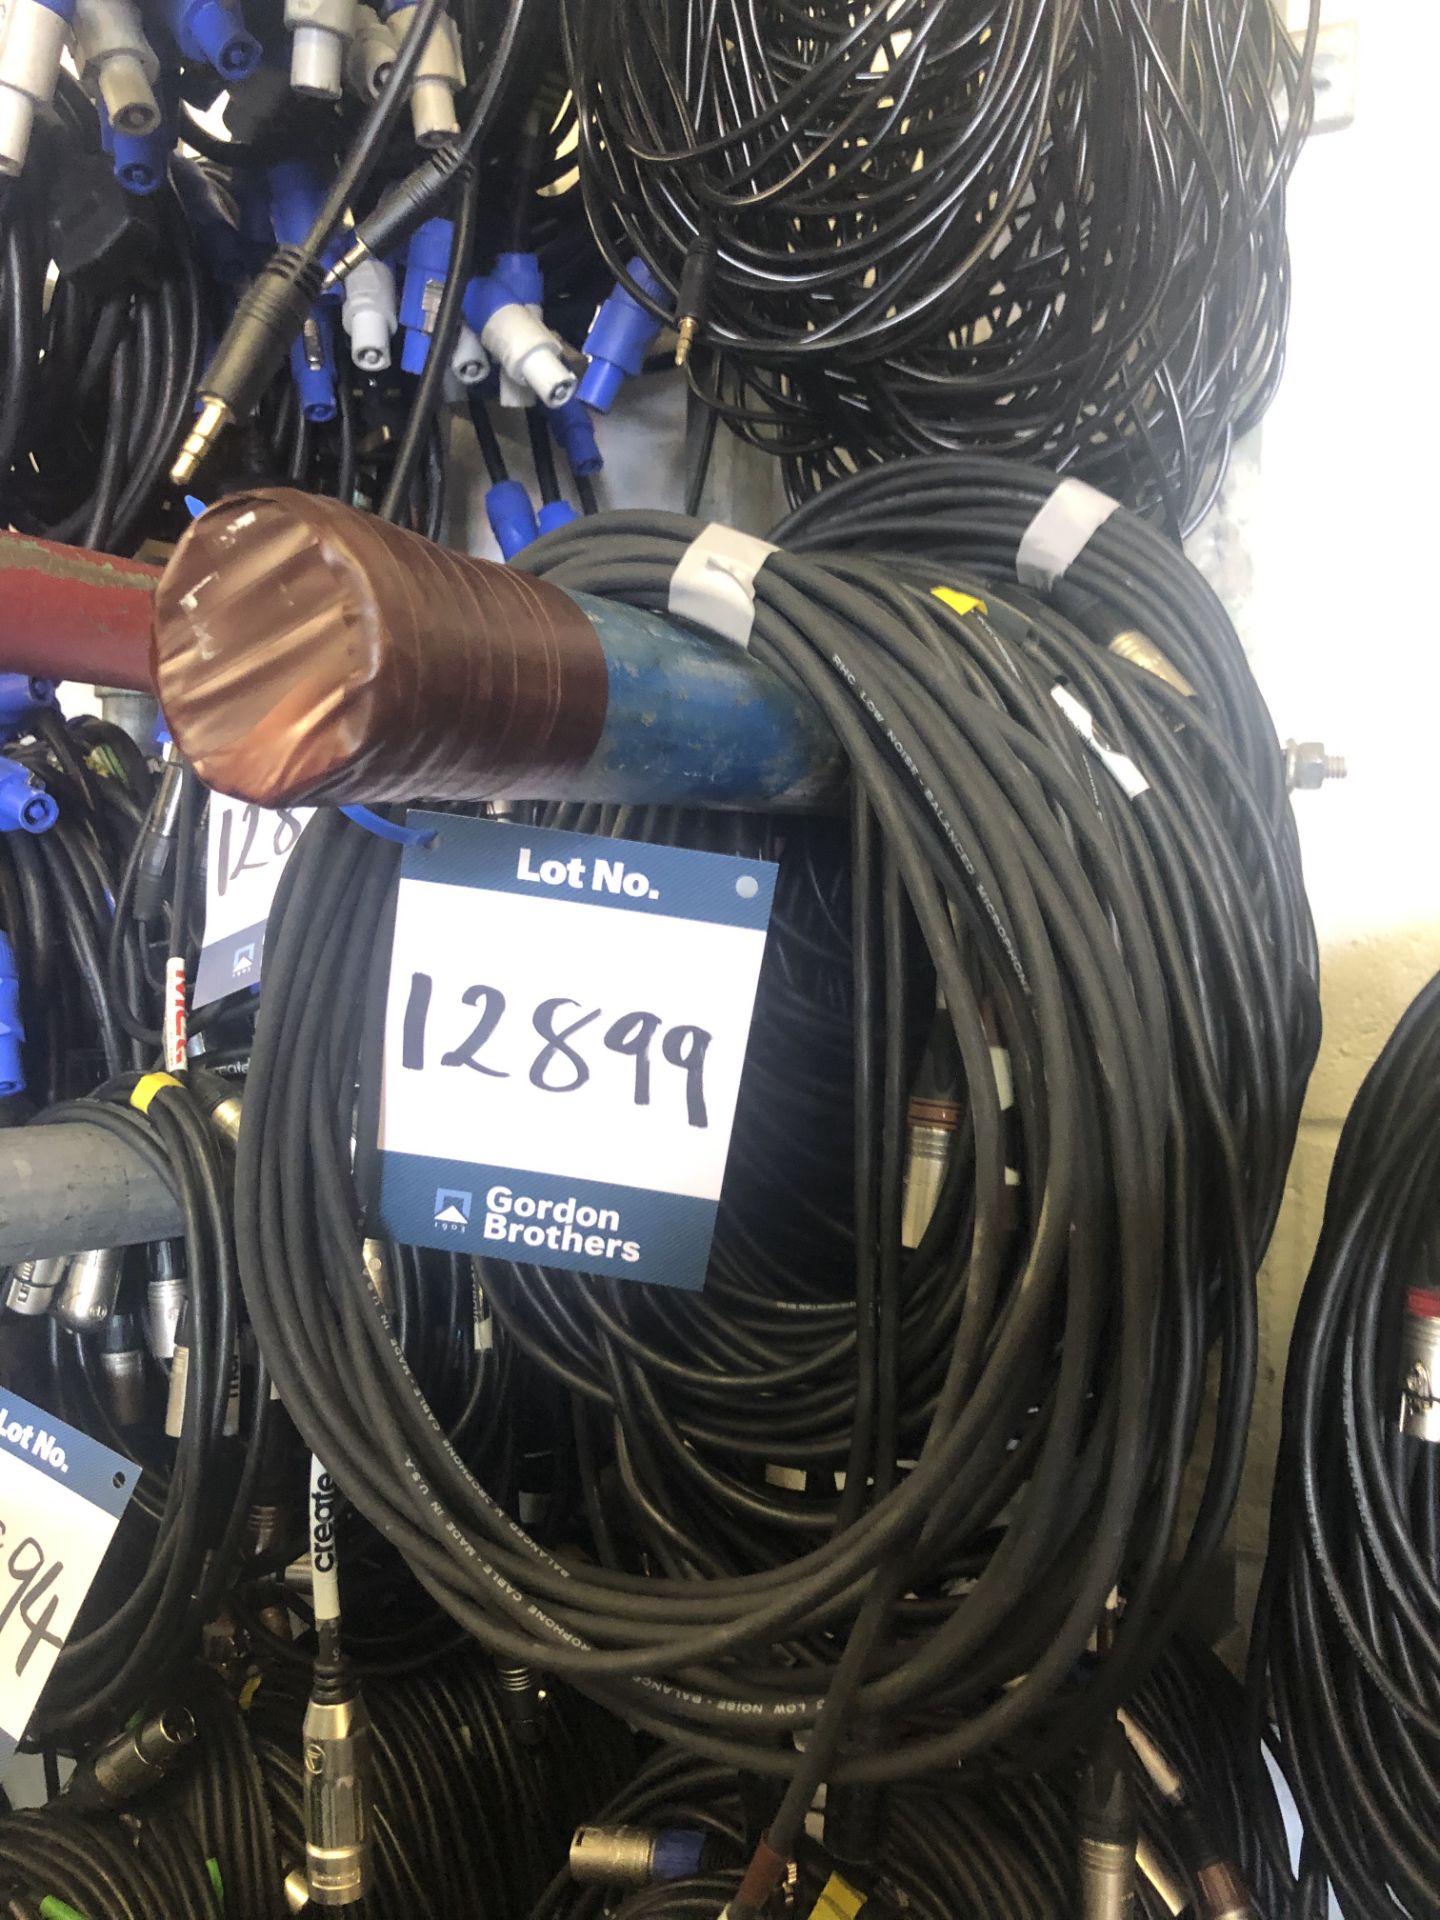 17x 10m XLR cables